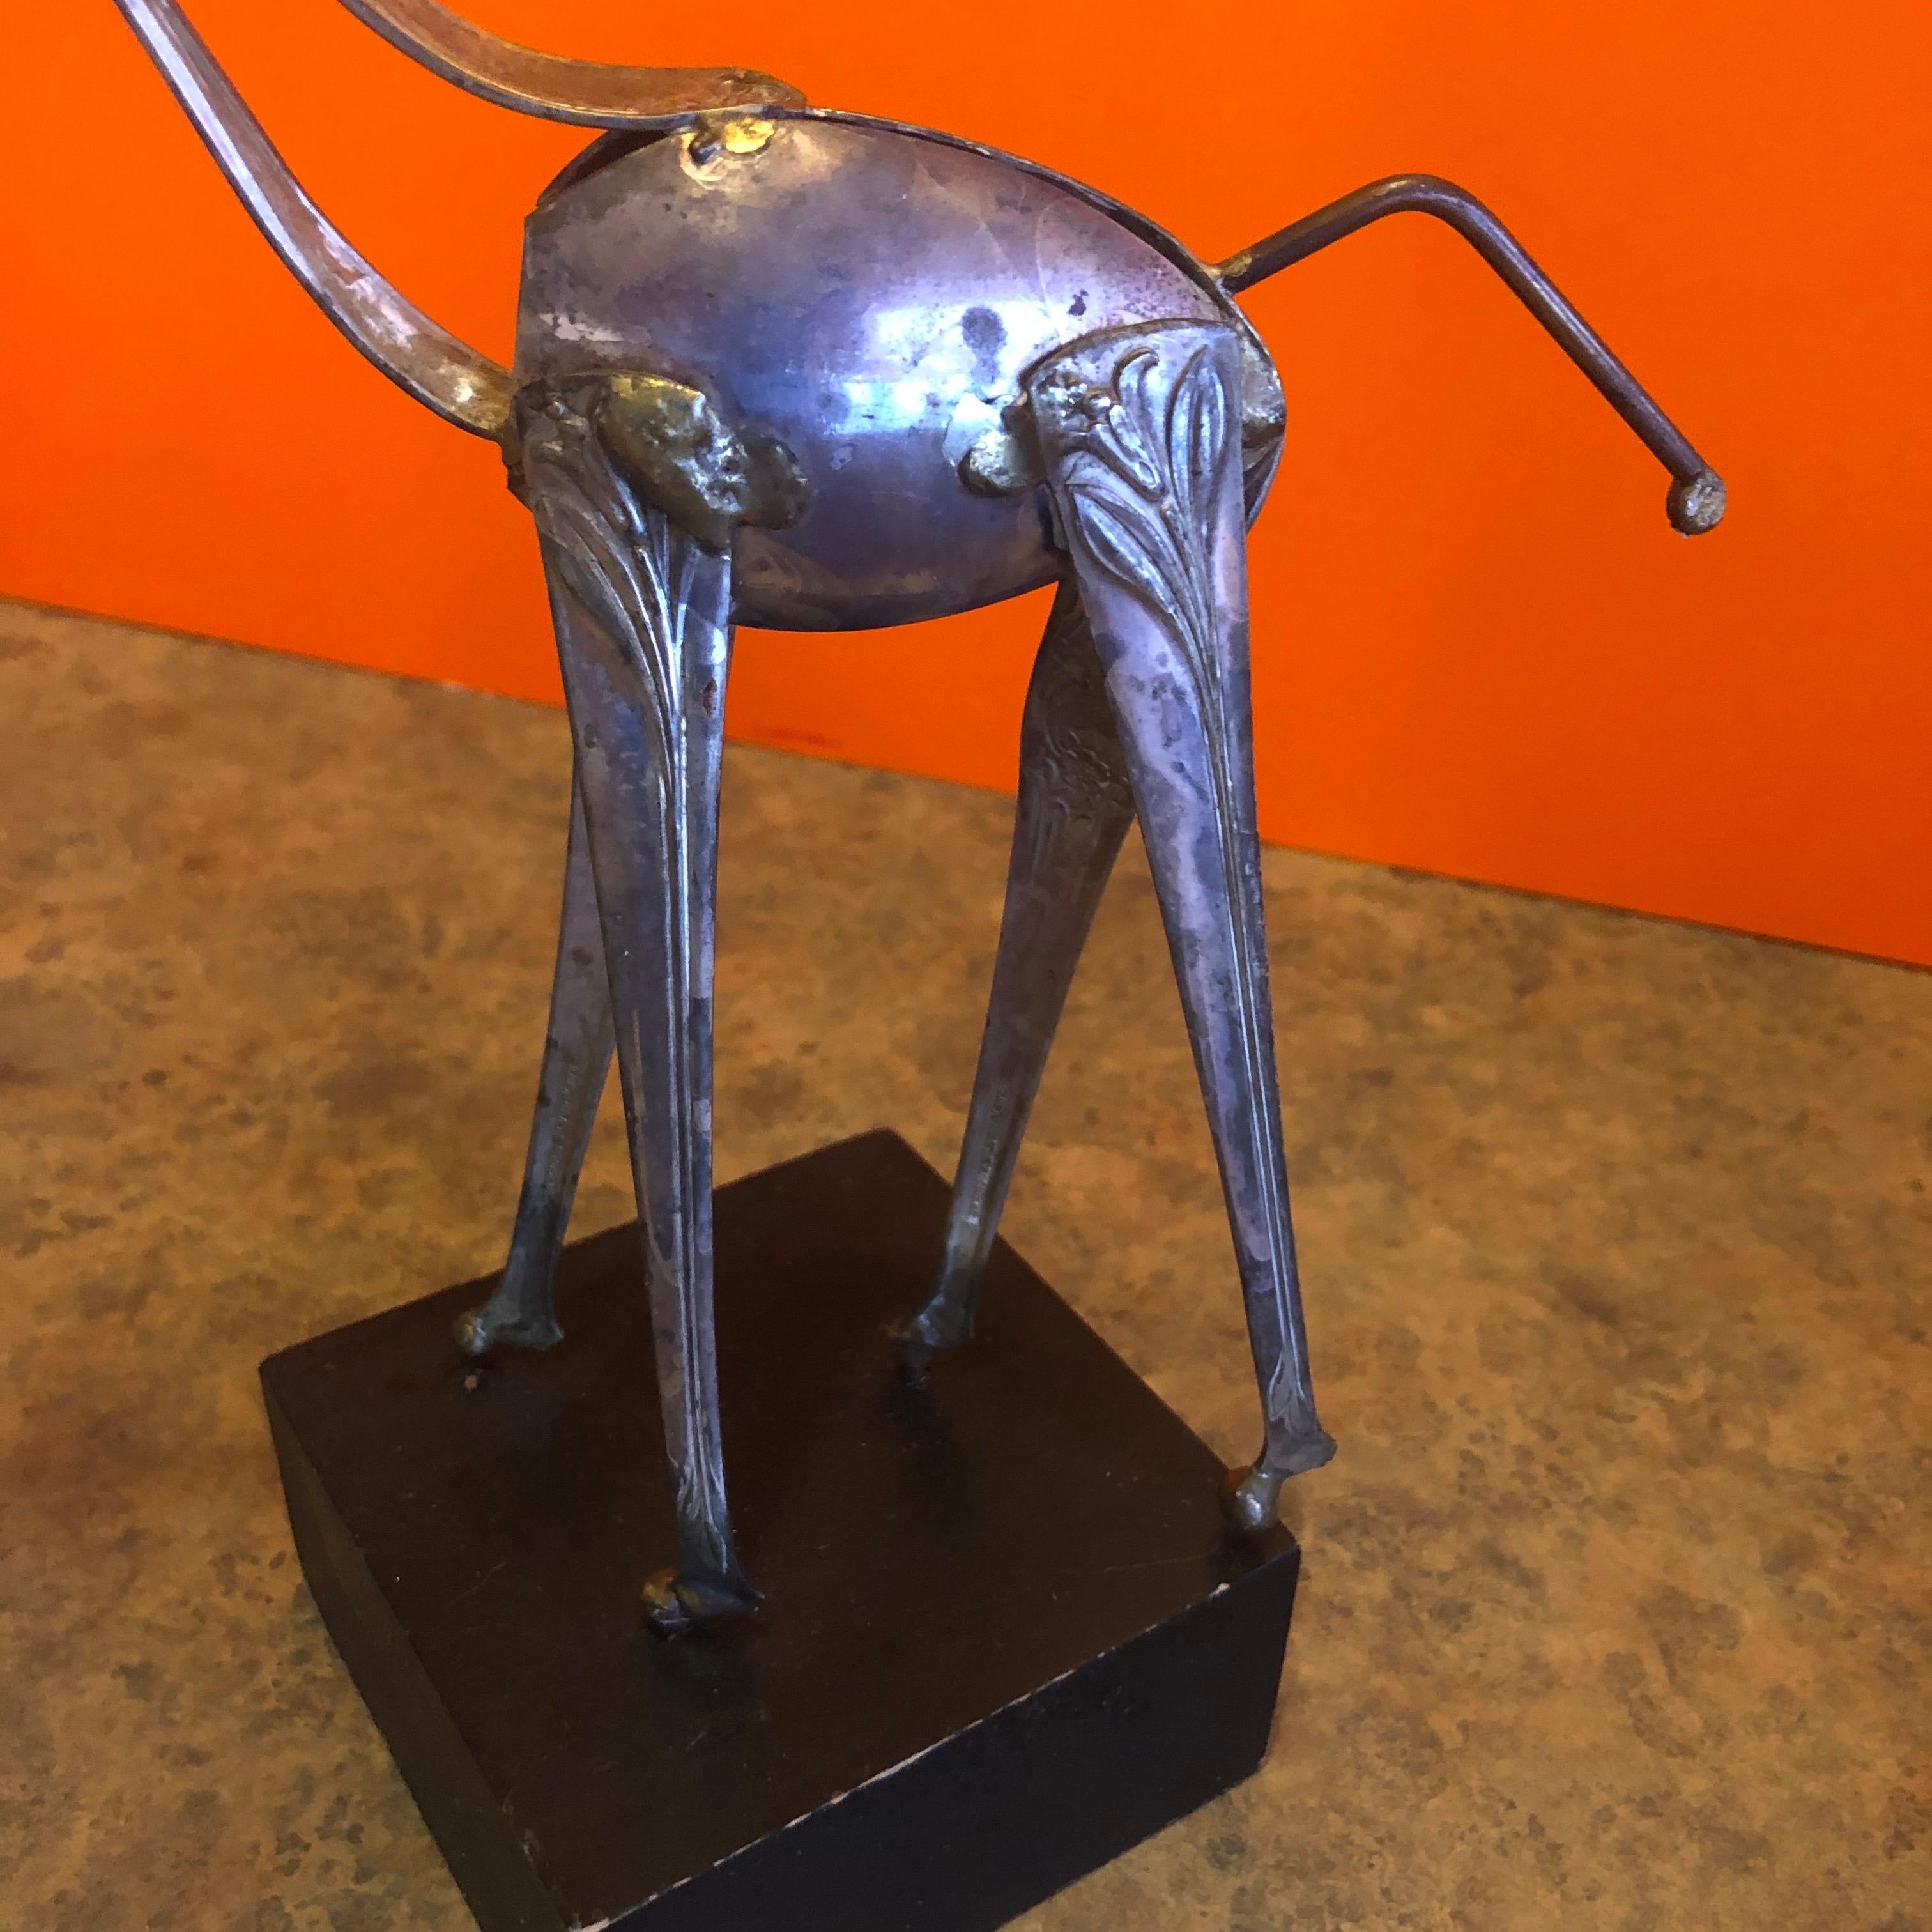 Modern Silver Plate Spoon Giraffe Sculpture by Raul Zuniga for Casa Del Arte For Sale 3